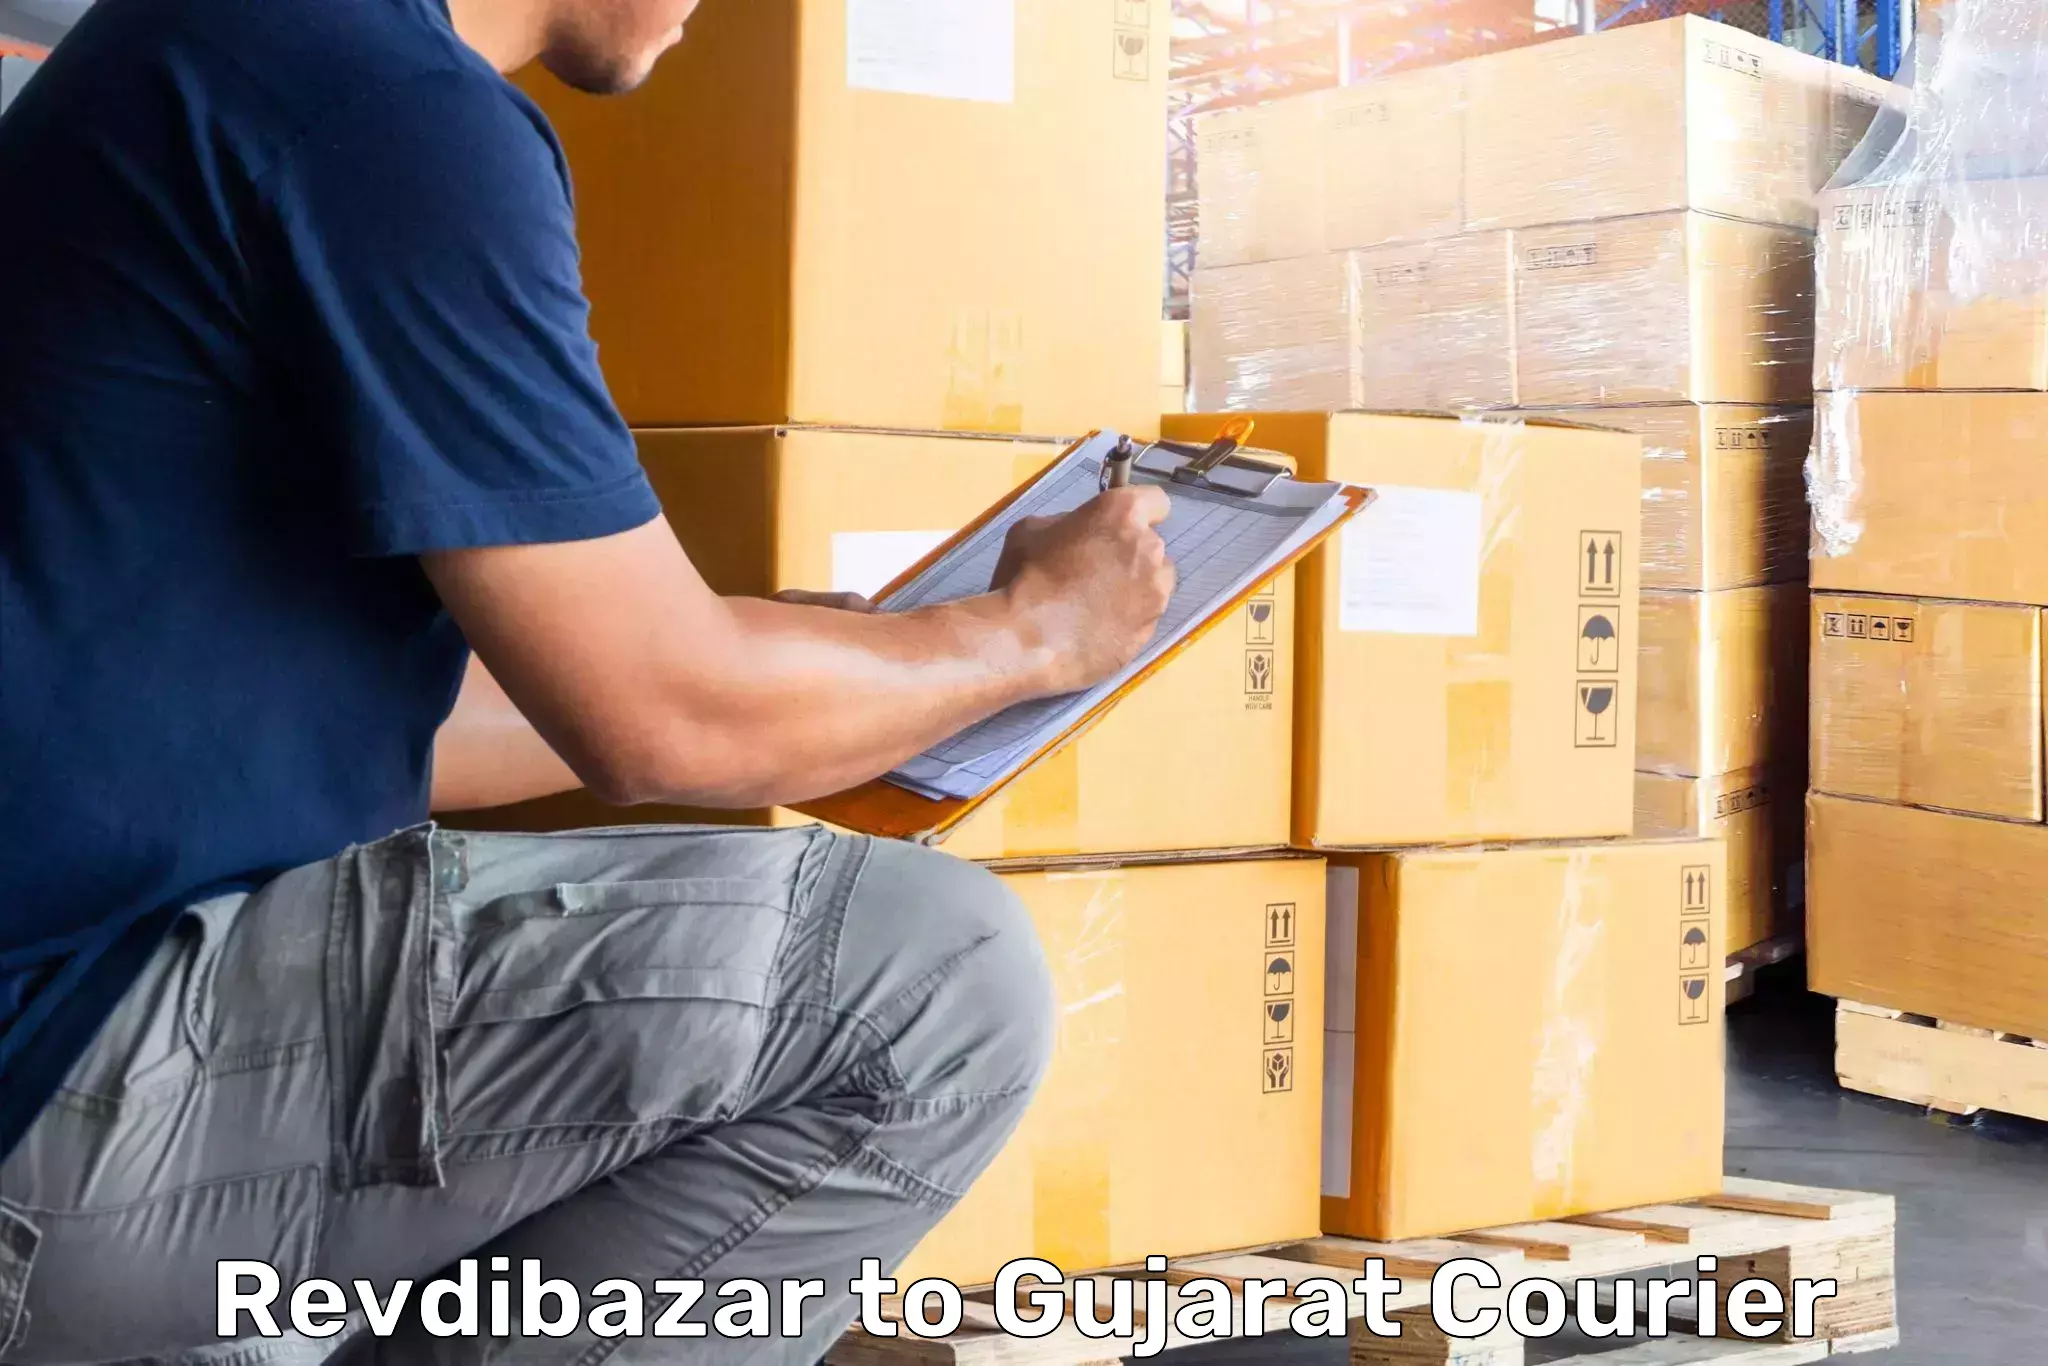 Luggage delivery app Revdibazar to Dahegam